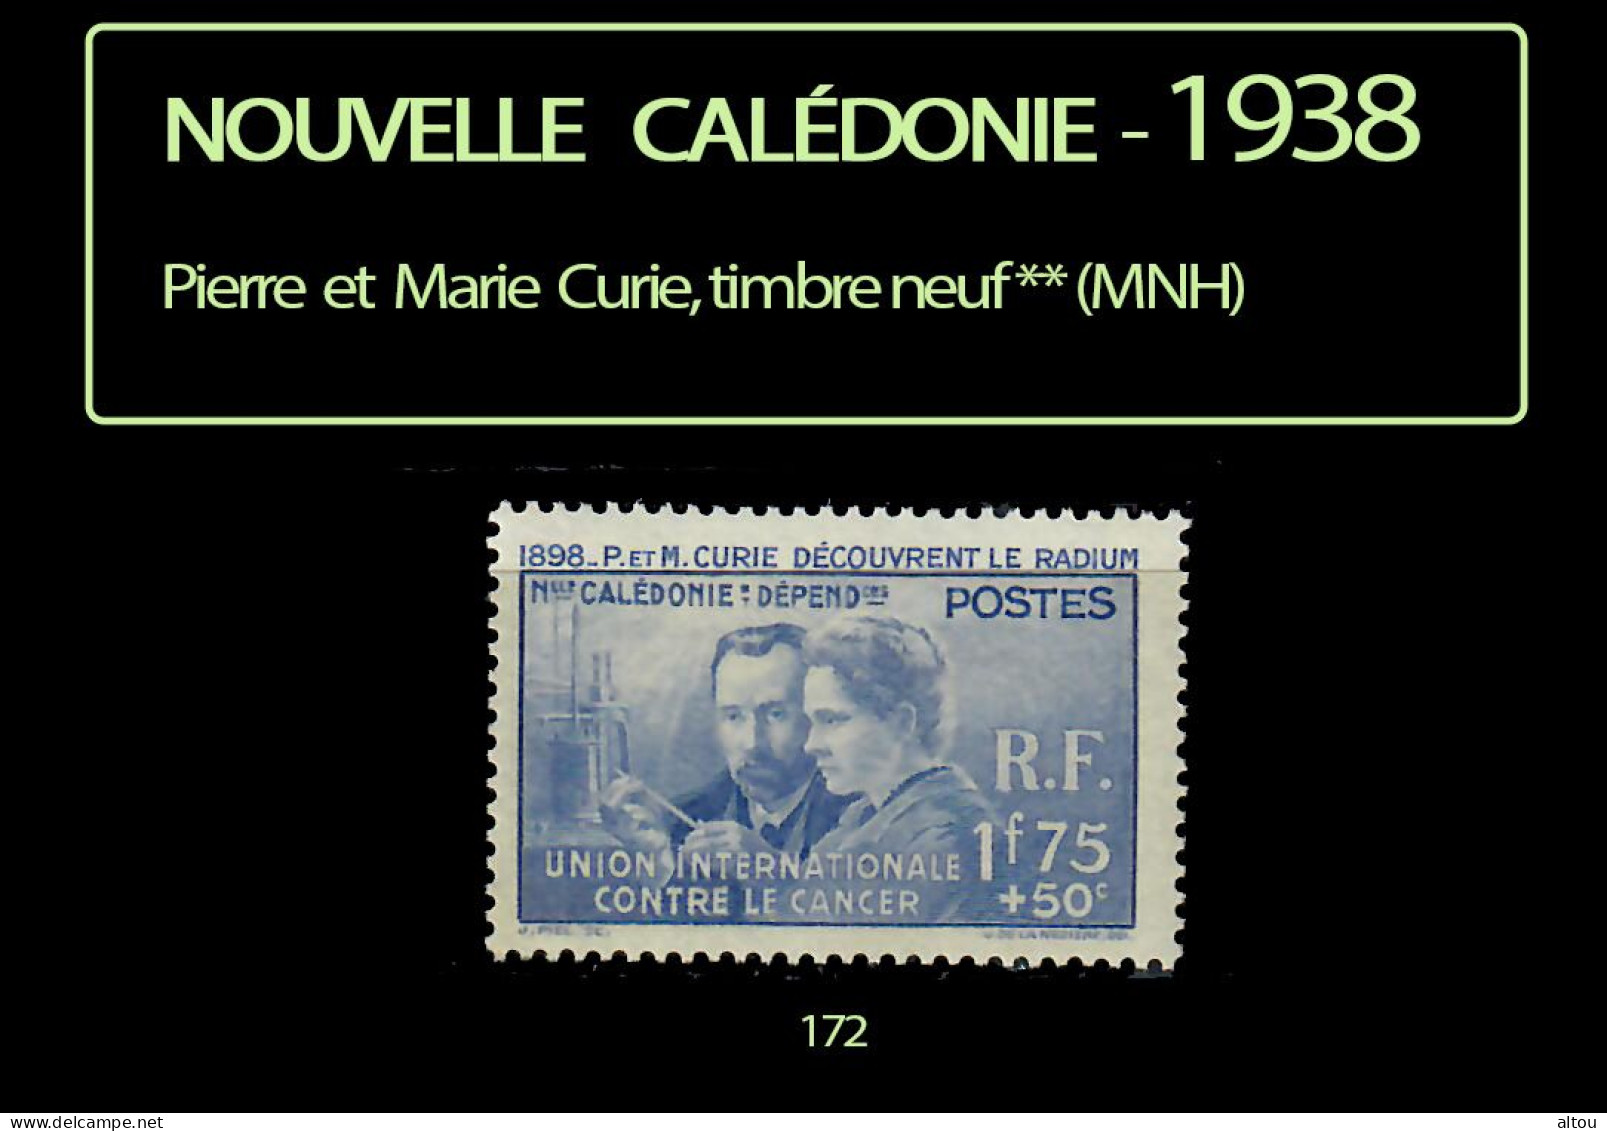 Nouvelle Calédonie 1938 - Pierre Et Marie Curie - Timbre Neuf ** (MNH) - Ungebraucht